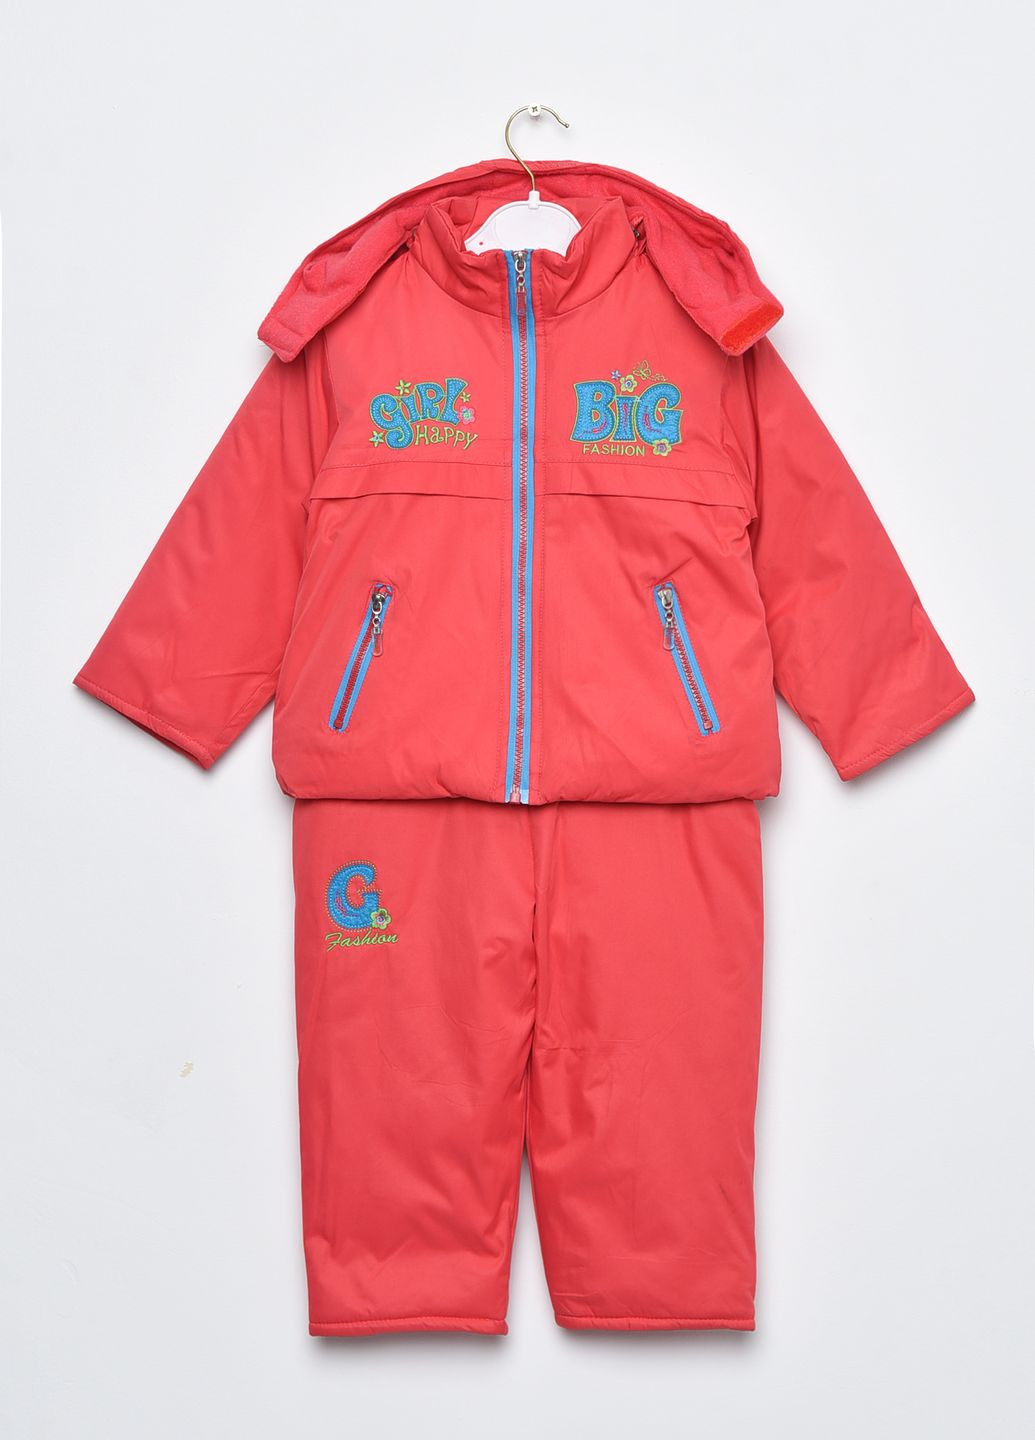 Темно-розовая зимняя куртка и полукомбинезон детский для девочки еврозима темно-розового цвета Let's Shop